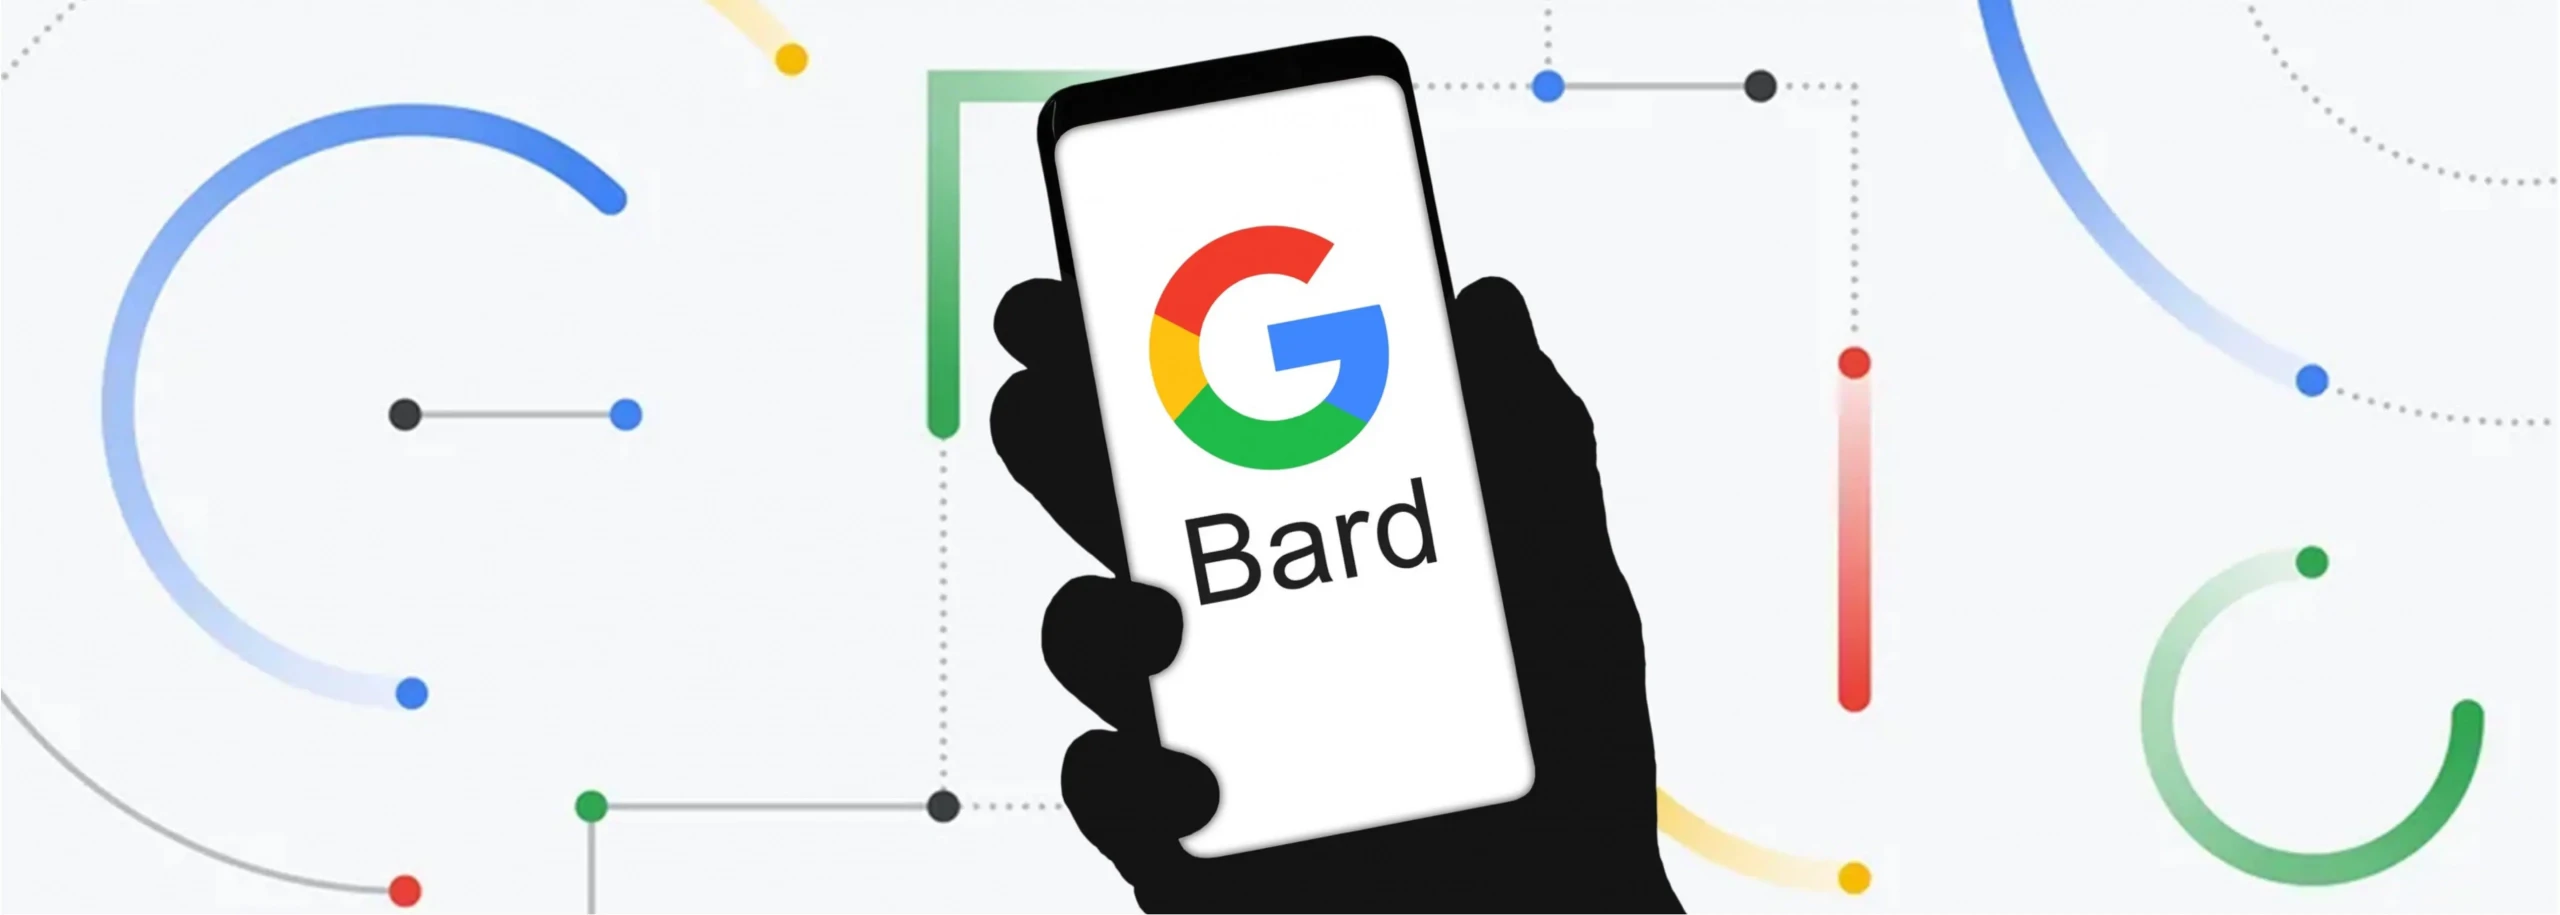 Google Bard क्या है? गूगल बार्ड भारत में लॉन्च; मुख्य विवरण यहाँ